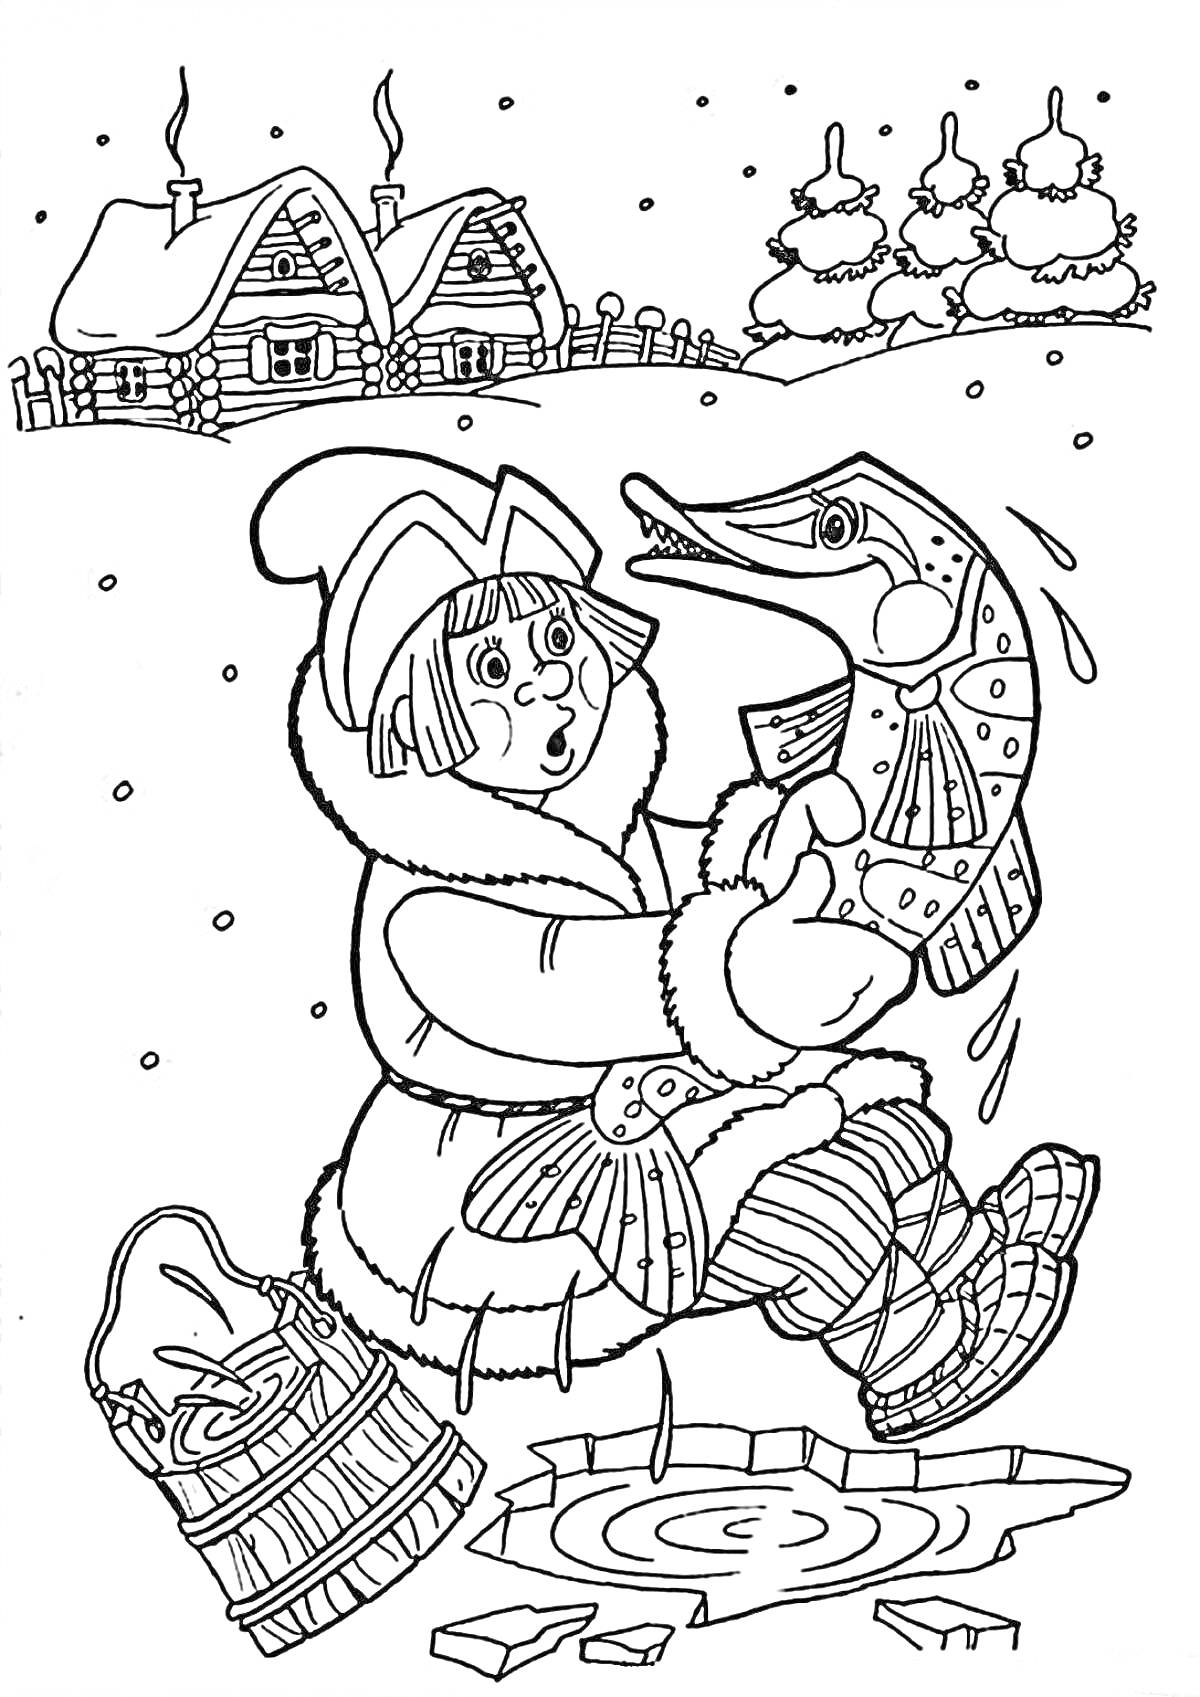 Раскраска Мальчик в зимней одежде отпускает щуку в прорубь, корзинка на льду, снег, избы с трубами из которых идет дым на заднем плане, заснеженные елки